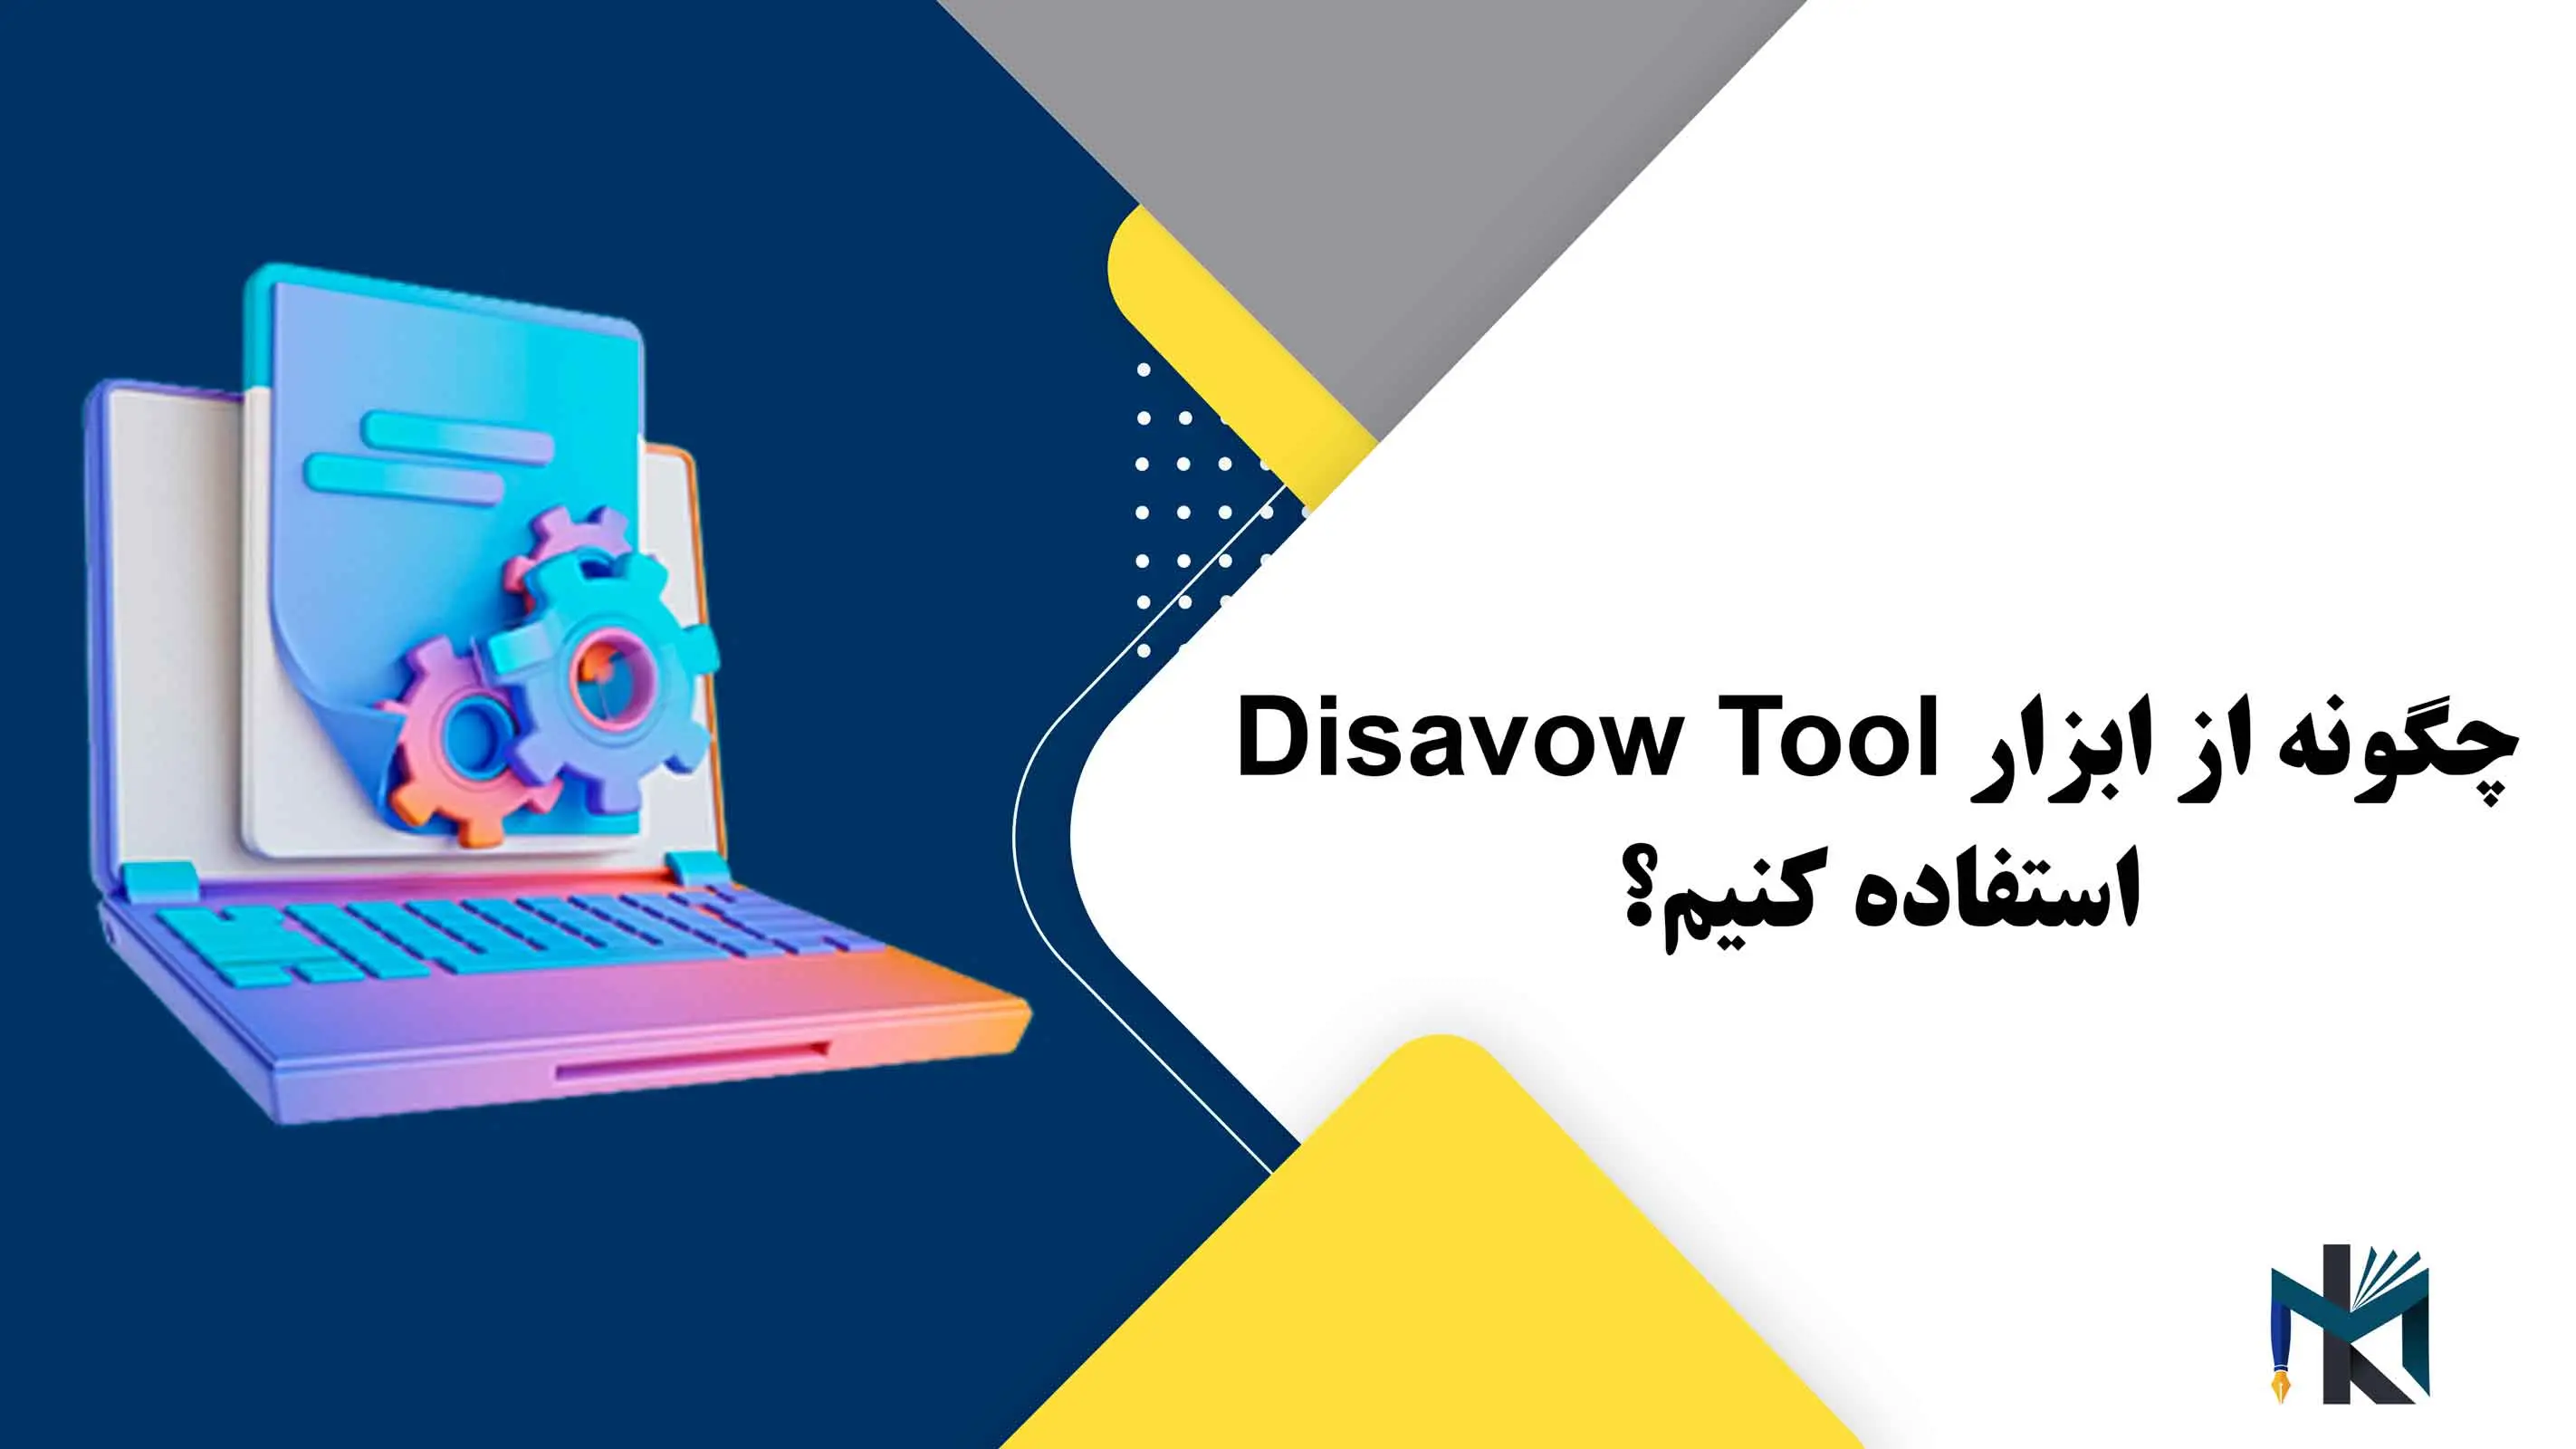 درس هفتم: چگونه از ابزار Disavow Tool استفاده کنیم؟